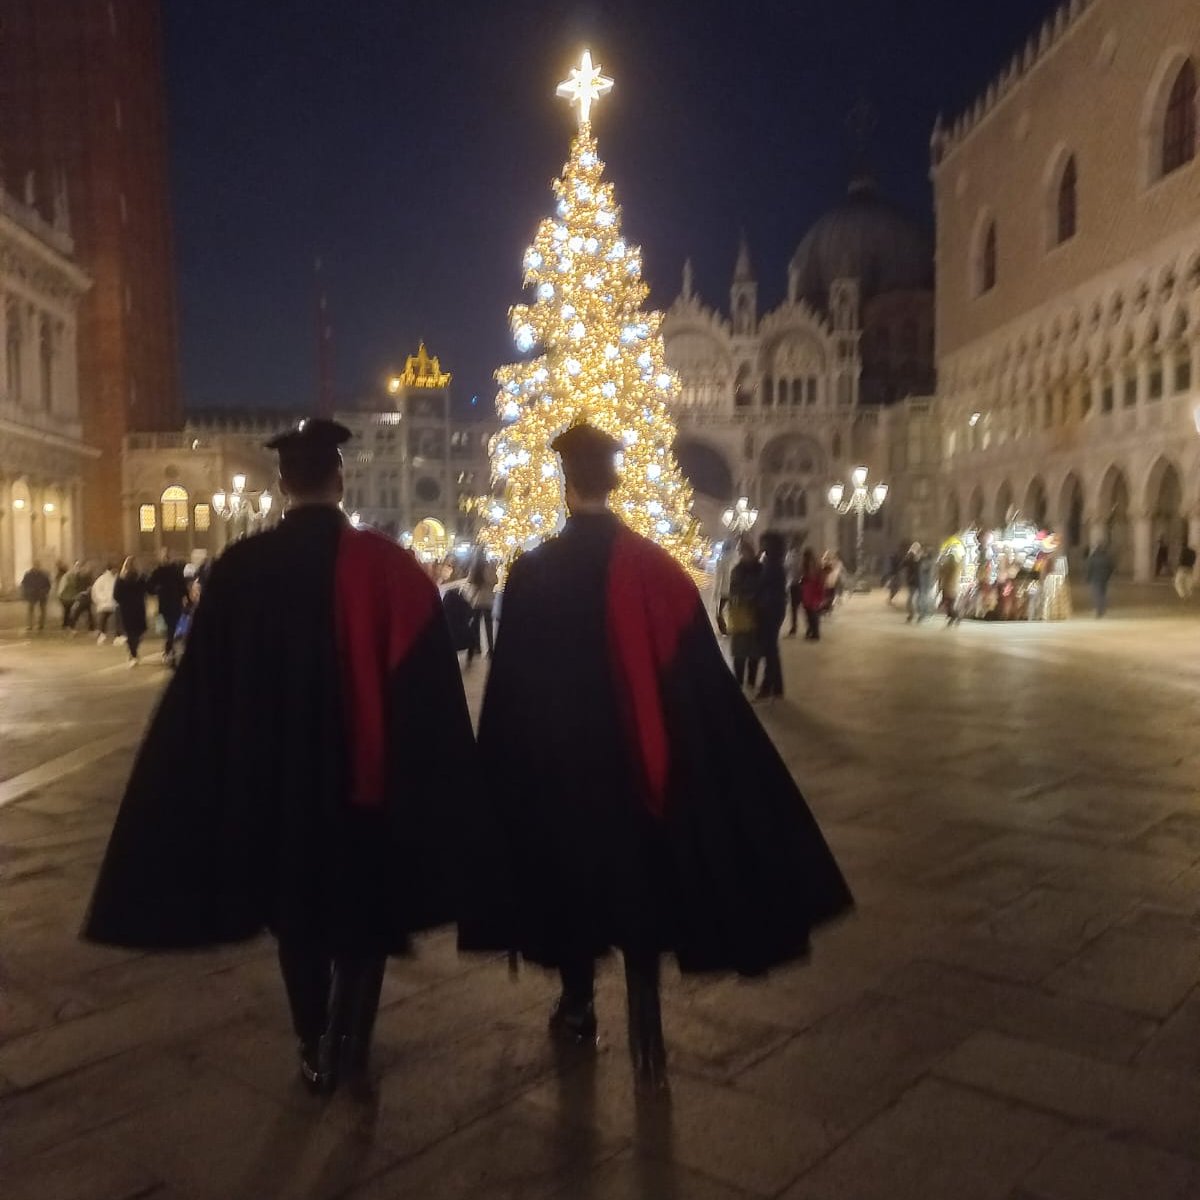 Buone Feste da Venezia
#PossiamoAiutarvi #Carabinieri #Difesa #ForzeArmate #22dicembre